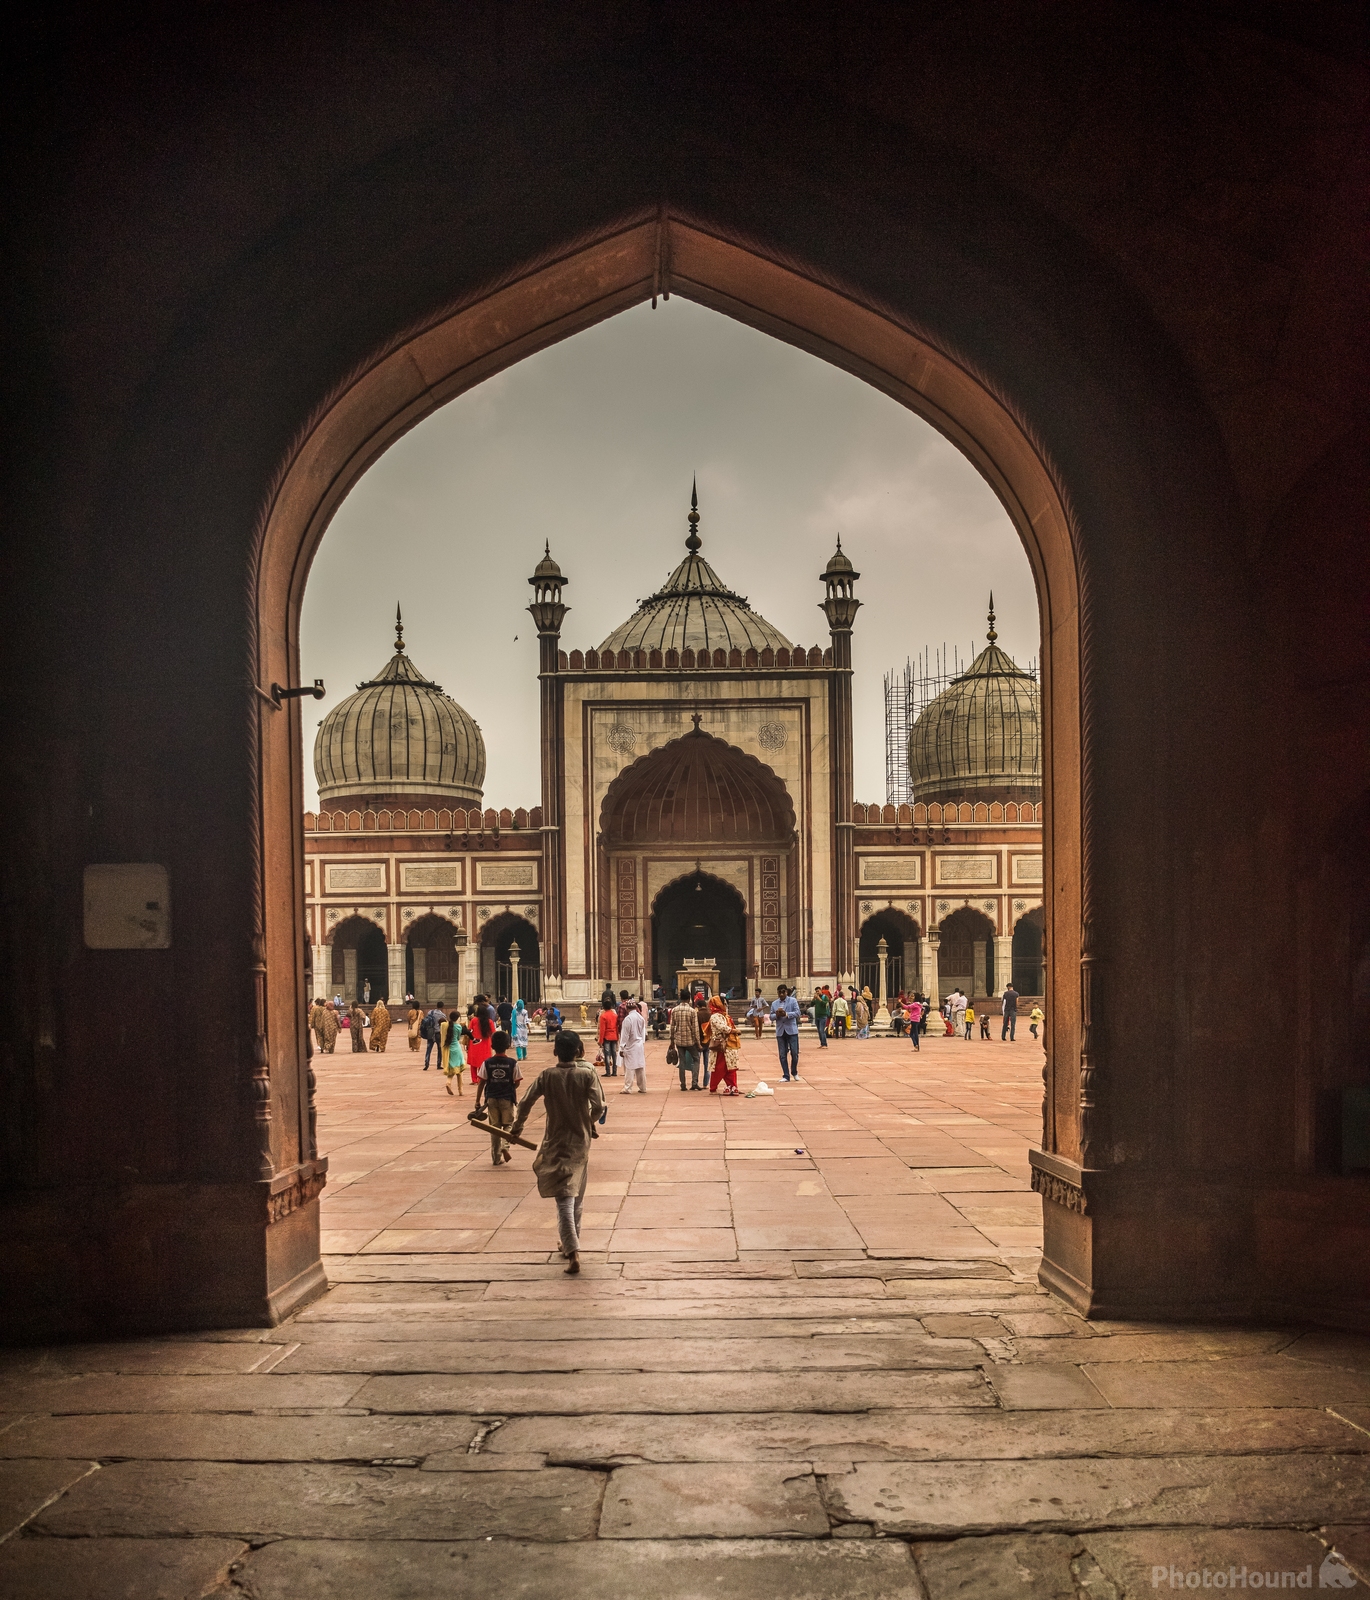 Image of Jama Masjid of Delhi by Anas Qarman